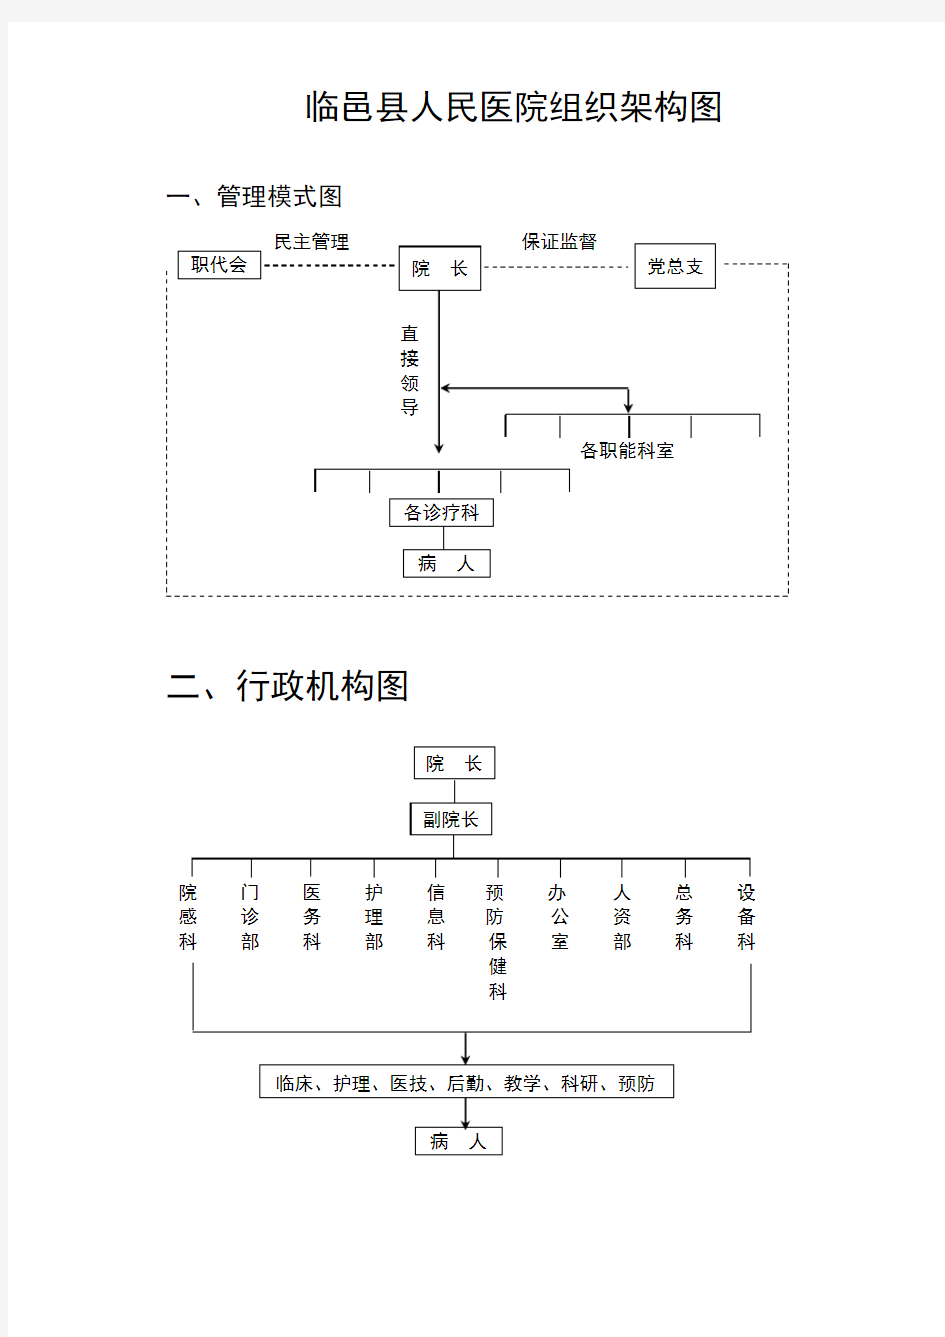 临邑县人民医院组织架构图